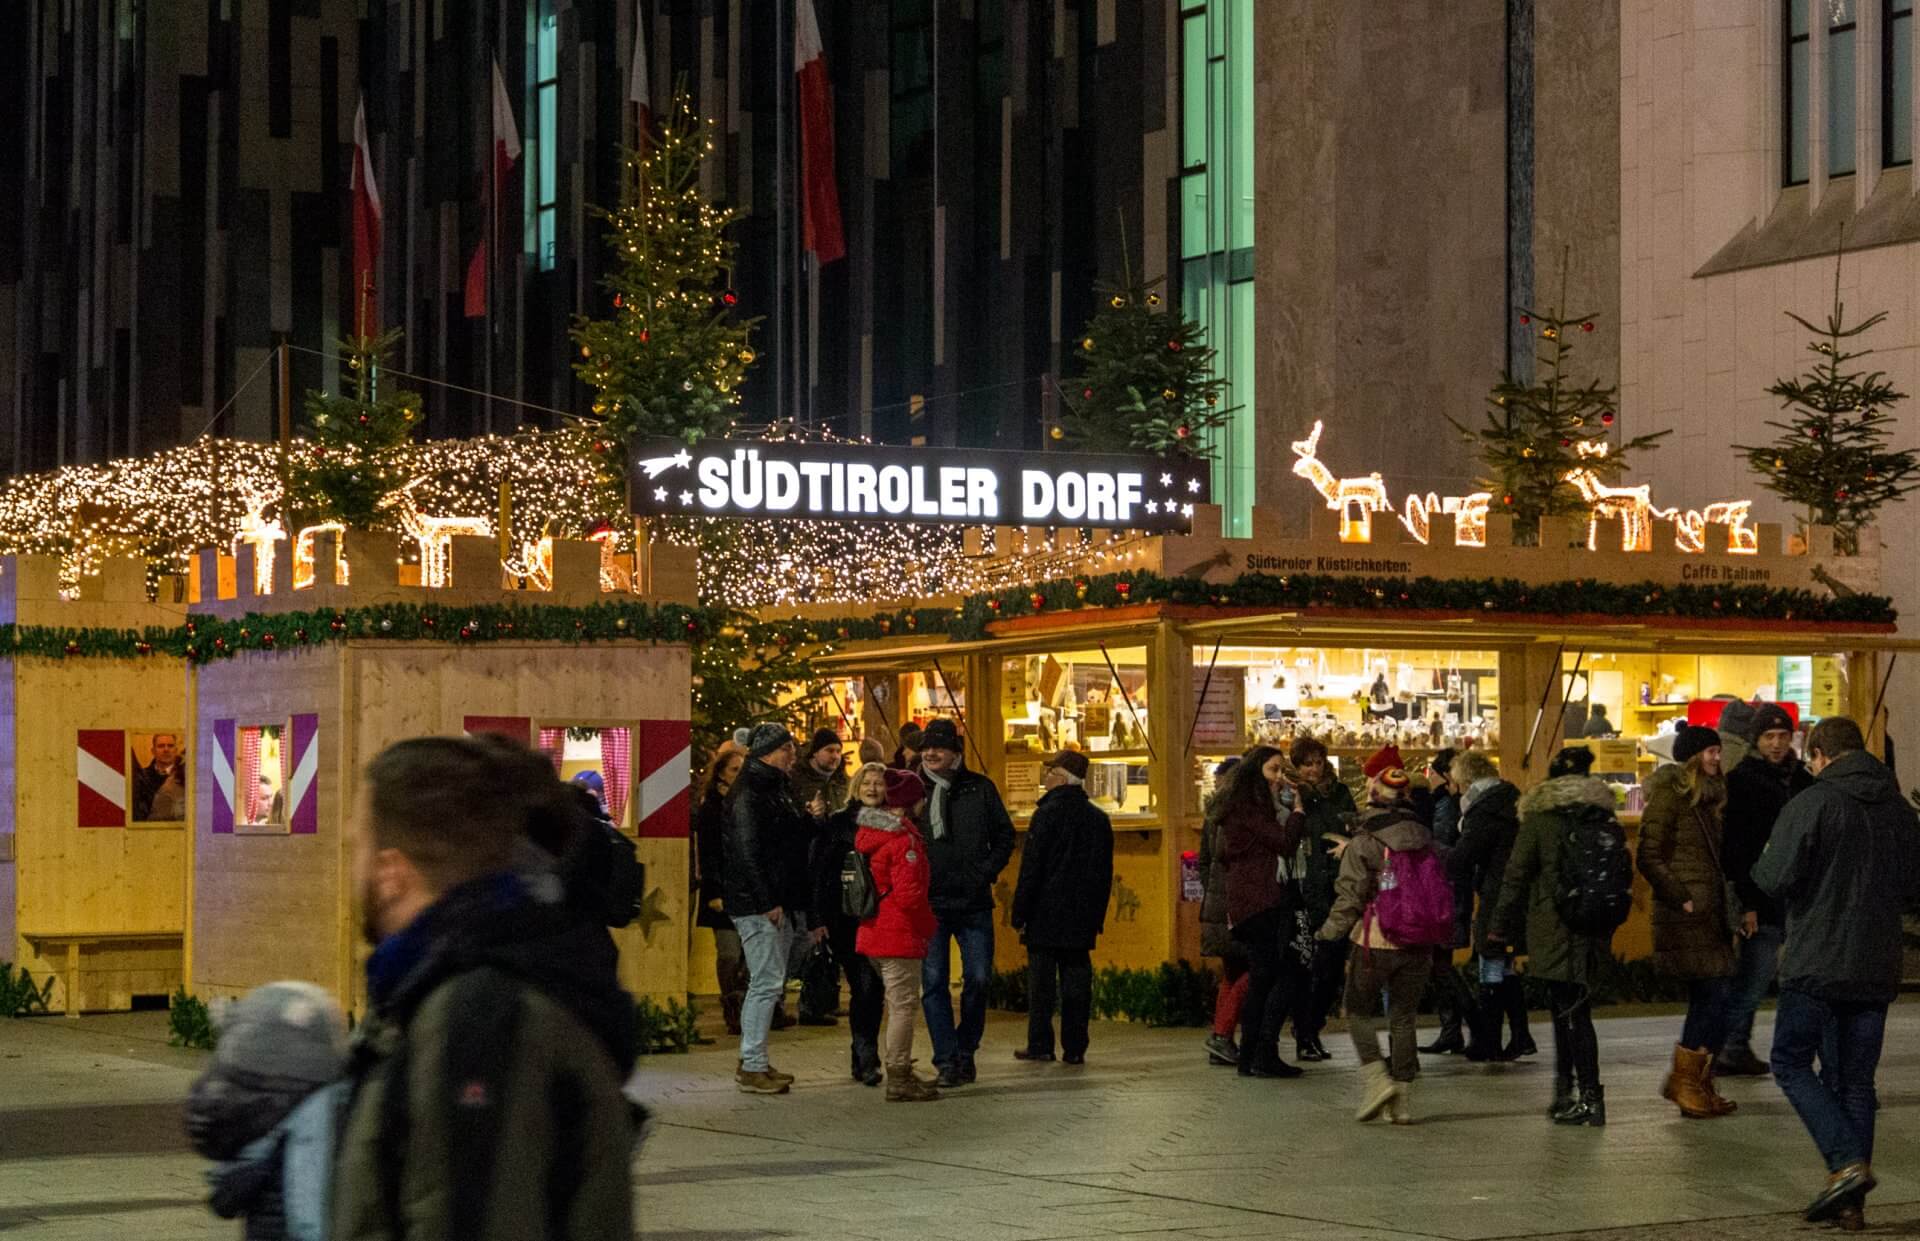 Südtiroler Dorf auf dem Weihnachtsmarkt Leipzig